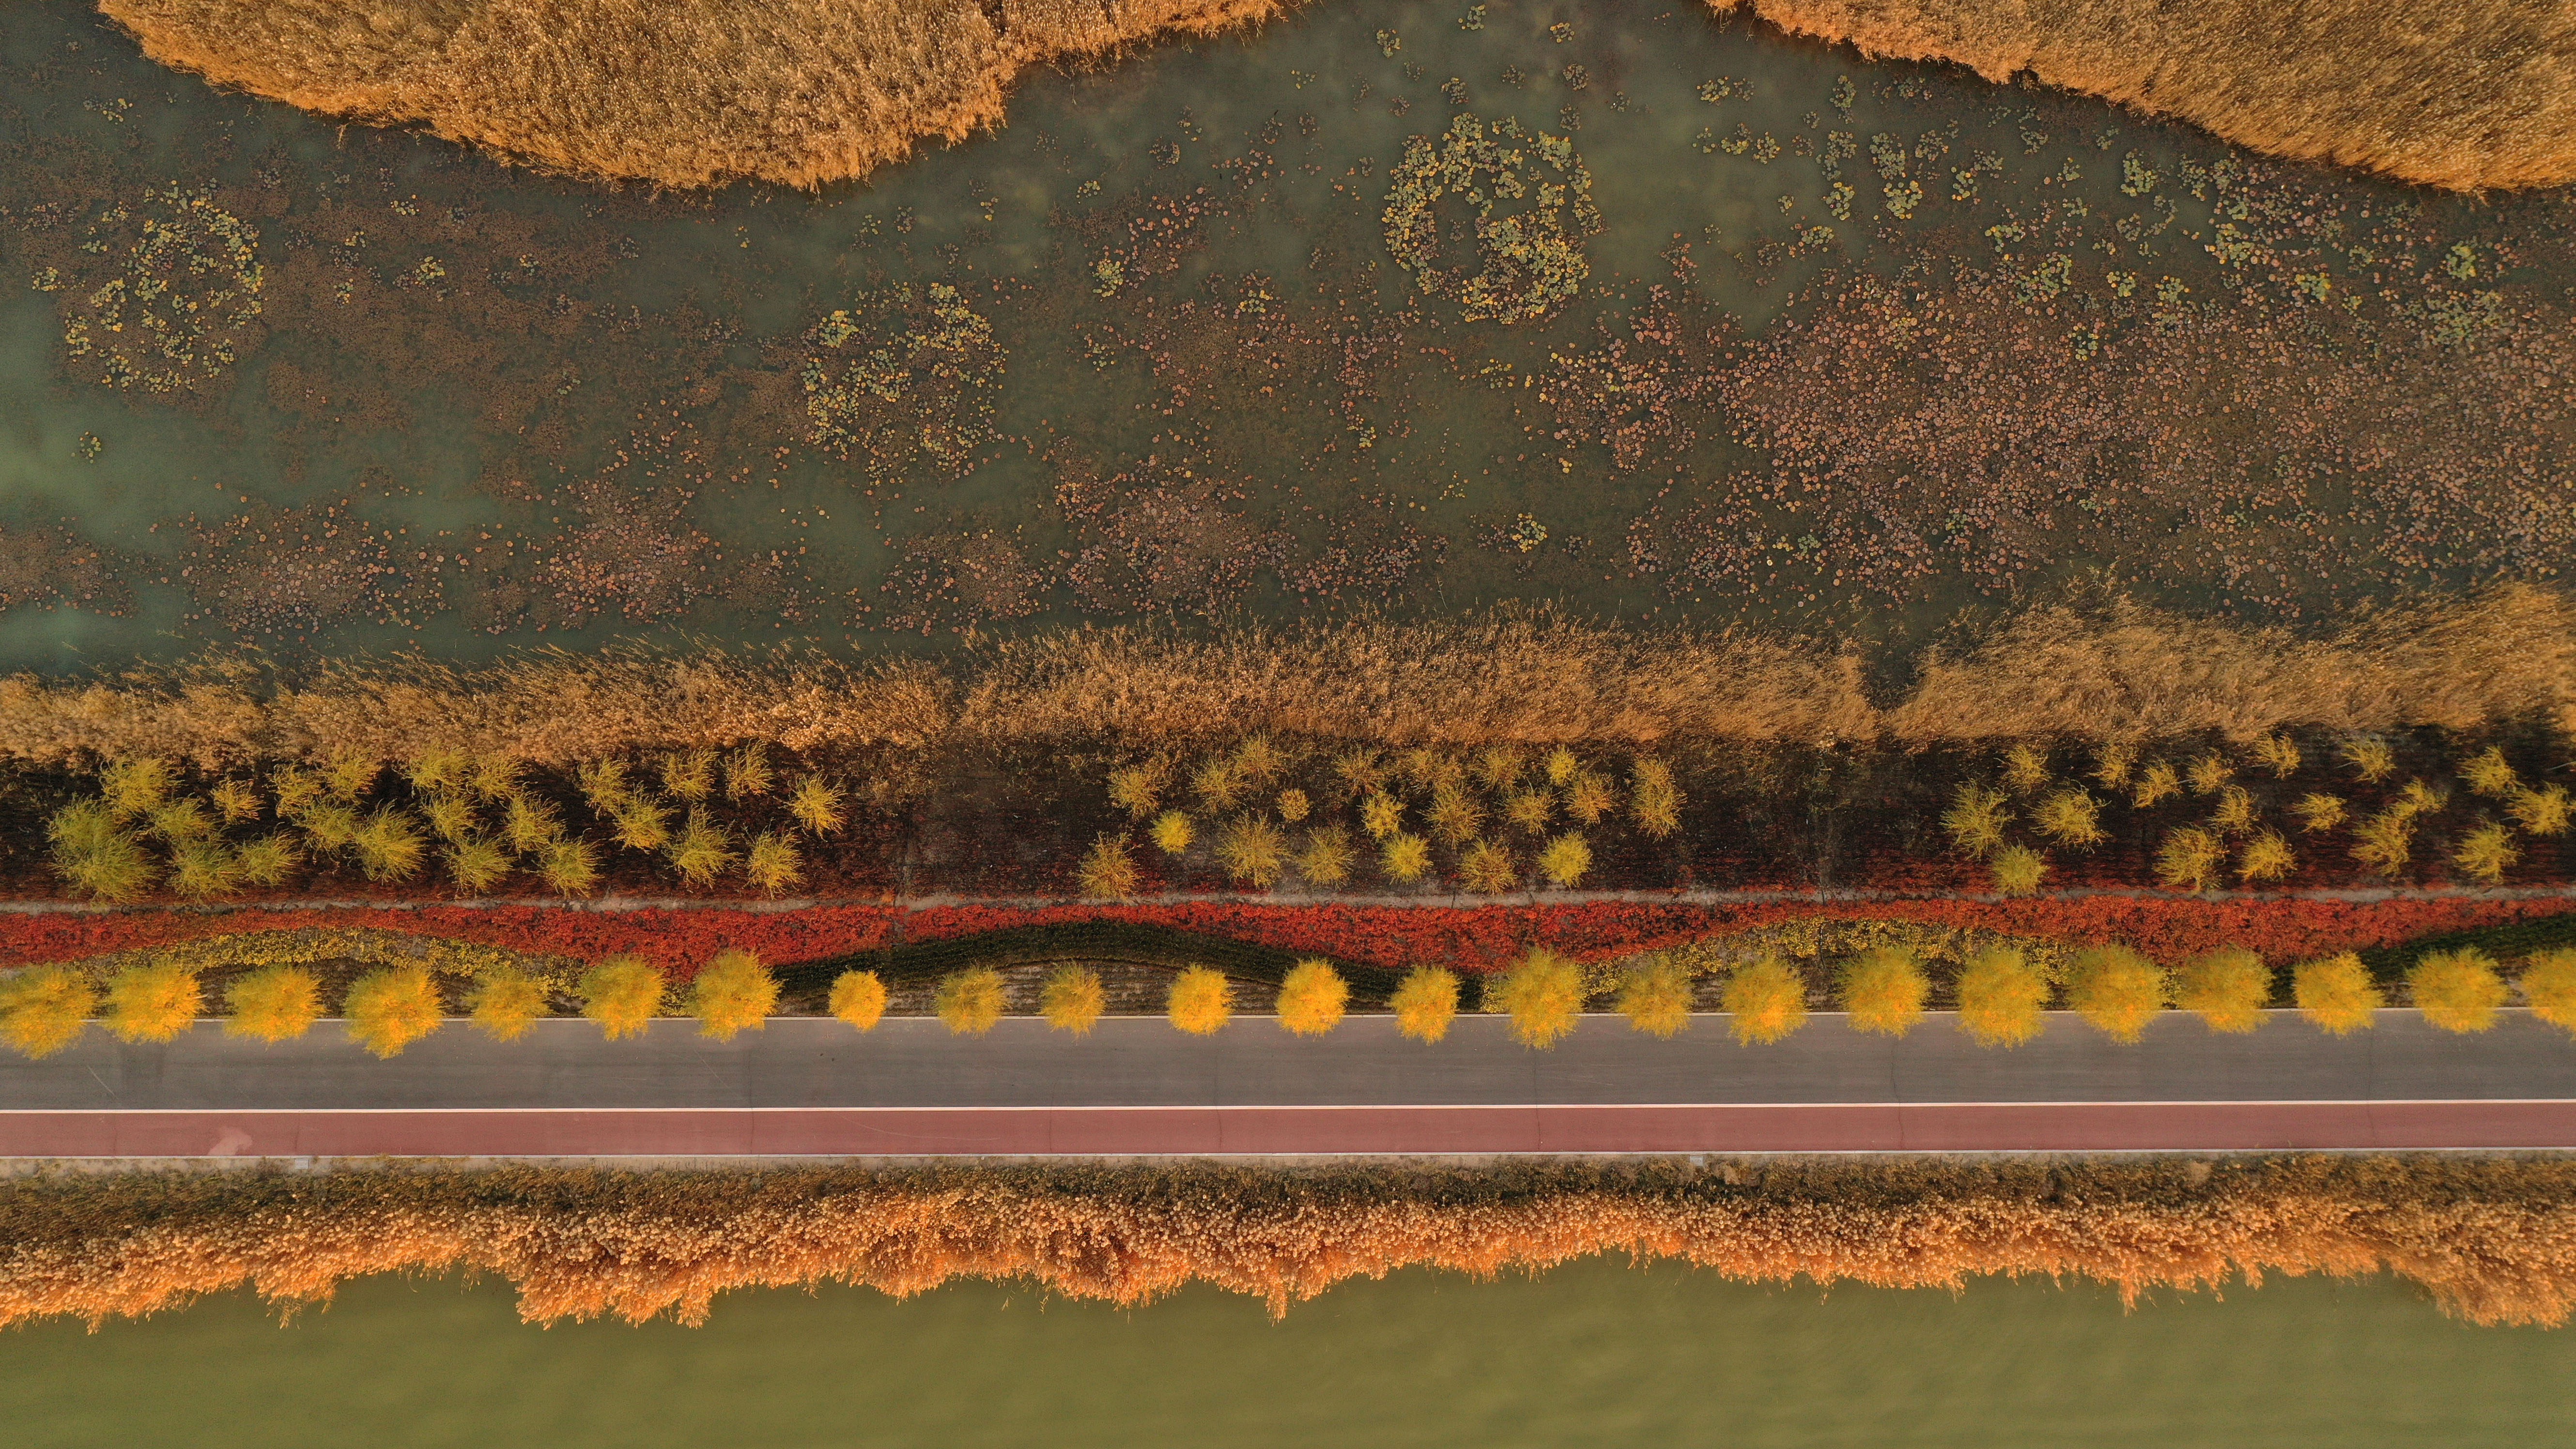 這是10月18日在寧夏沙湖景區拍攝的夕陽下的彩虹橋。金秋十月，位於寧夏石嘴山市平羅縣的沙湖景區秋色浸染，葦蕩金黃、候鳥翔集，構成一幅美麗的塞上江南秋景圖。（新華社）
